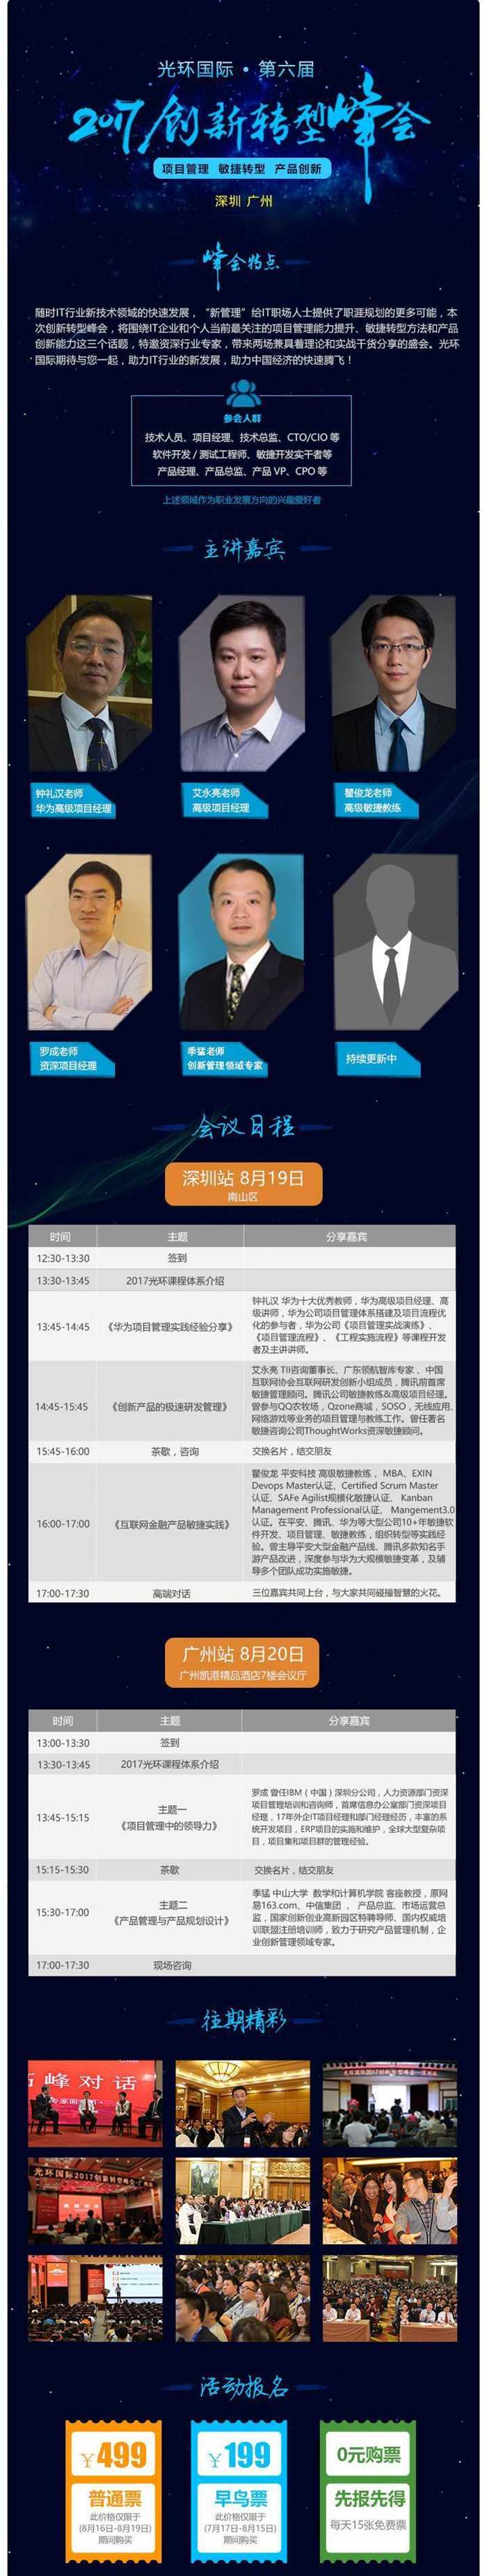 深圳-广州第六届峰会移动端邮件7.jpg